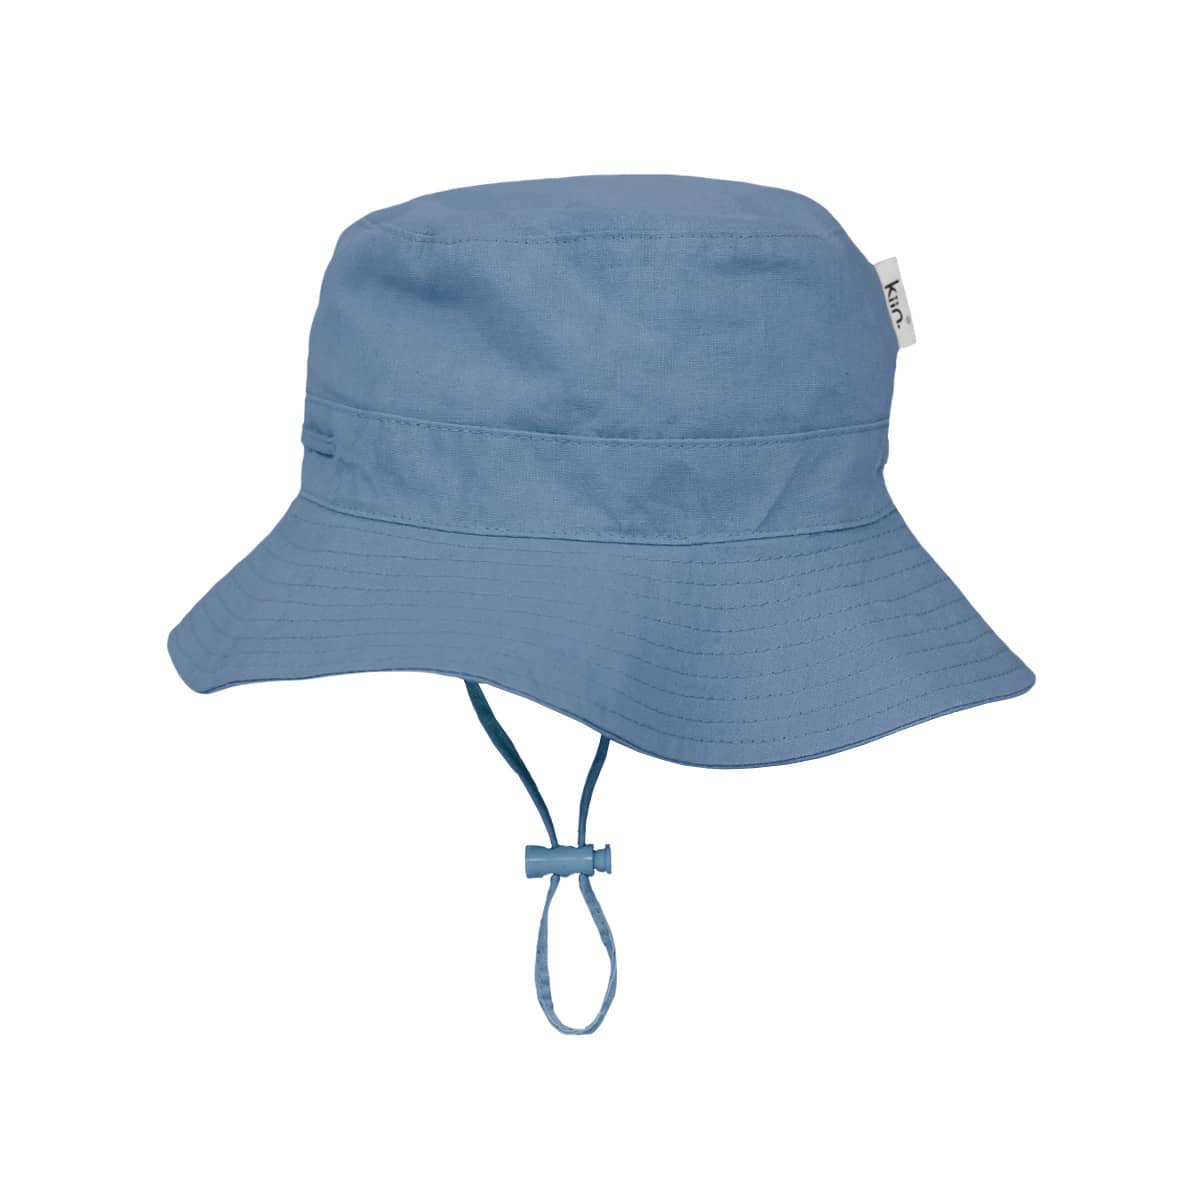 Kiin Baby Cotton Sun Hat - Blue Shadow